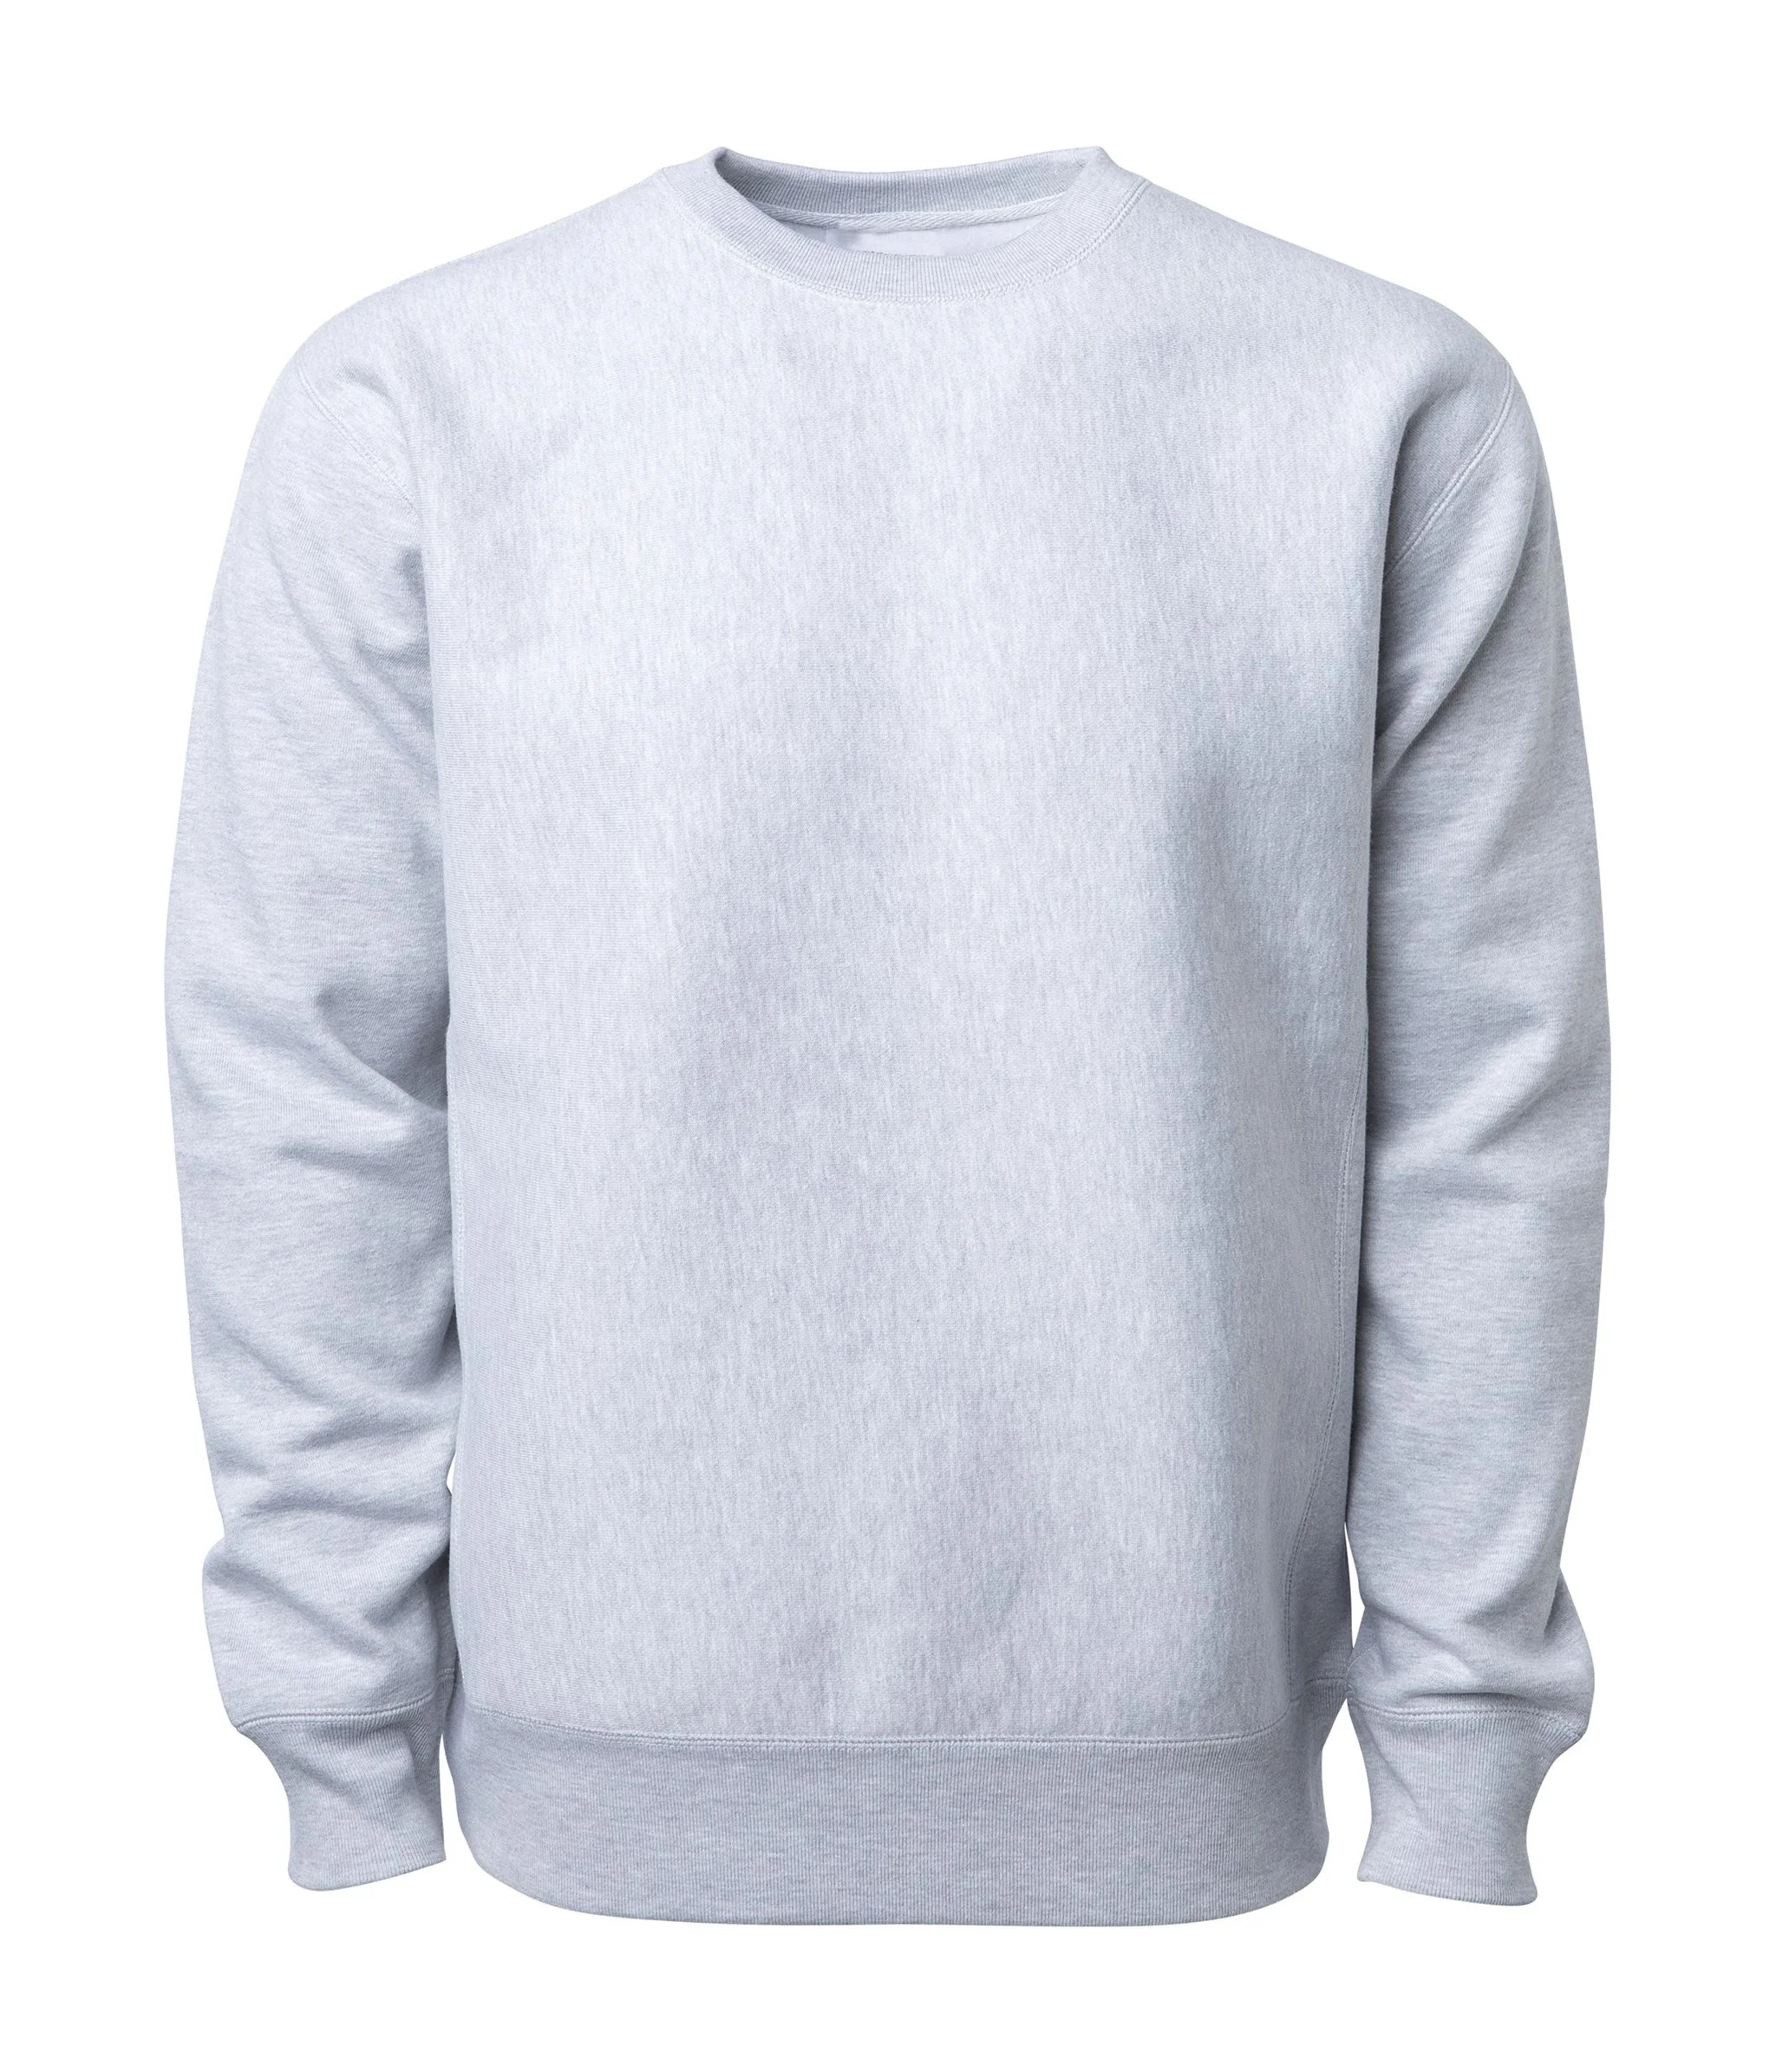 Men's Winter Heavyweight Sweatshirts - Buy Heavy Fleece Stuff Hoodies ...